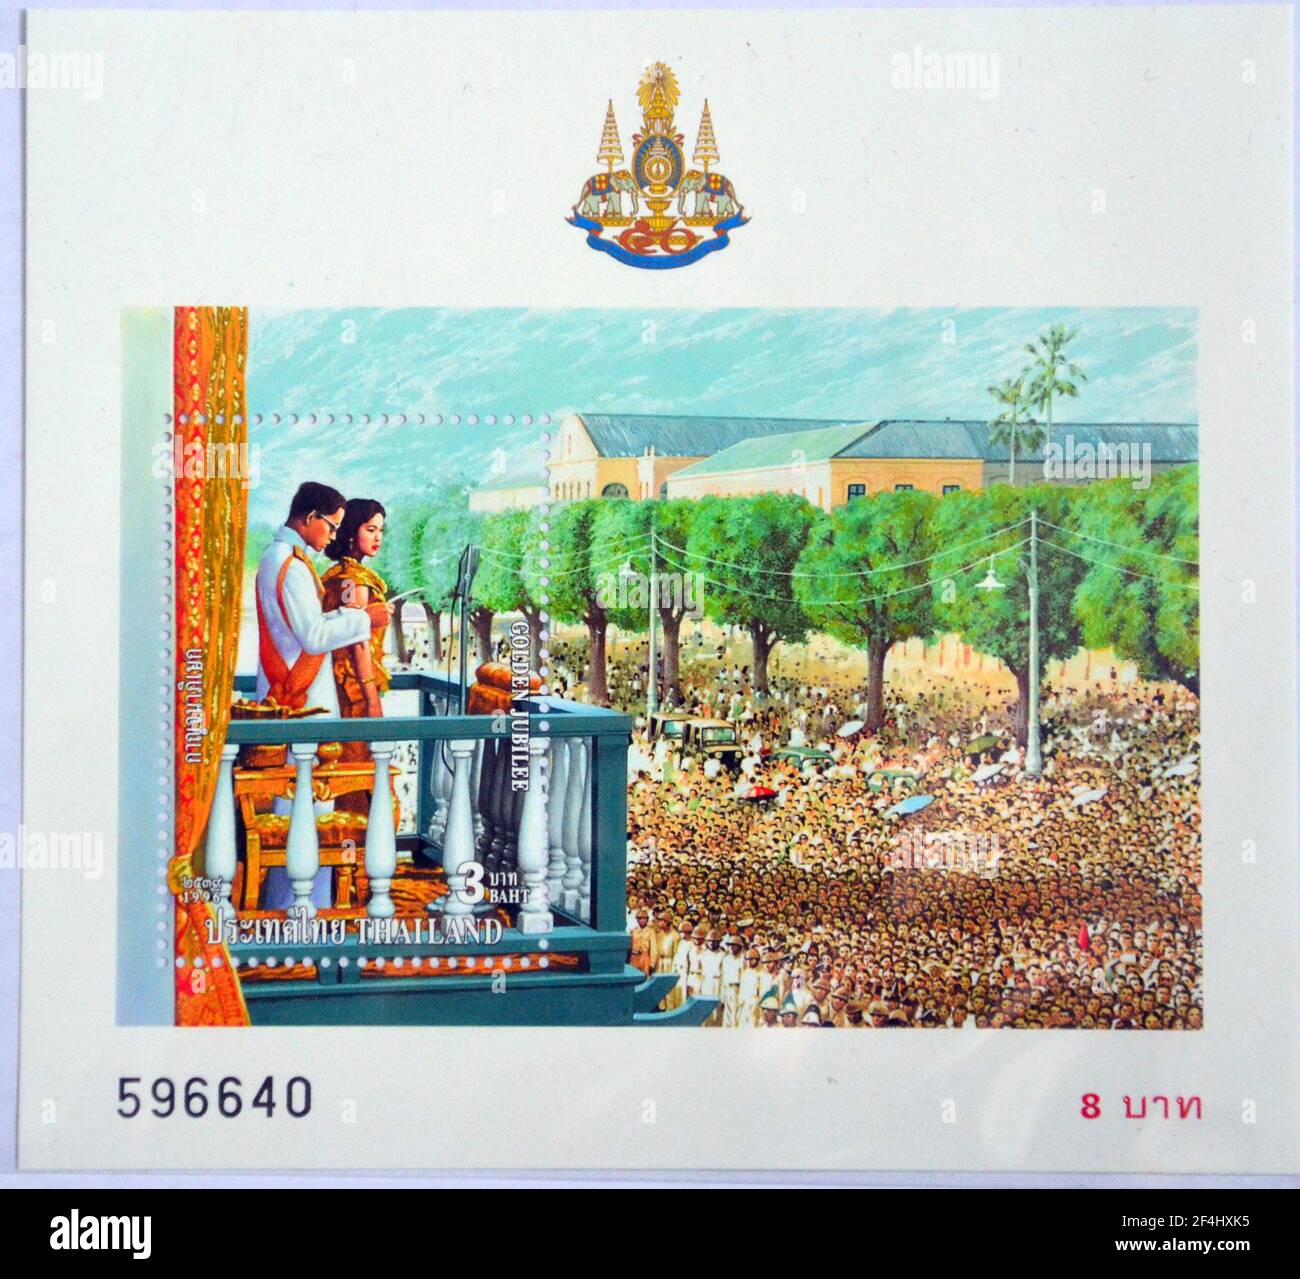 1996 Thailand souvenir Stamp mini feuille Roi Bhumibol Golden Jubilee. Le roi Bhumibol Adulyadej était le neuvième monarque de Thaïlande de la dynastie Chakri, intitulé Rama IX Banque D'Images